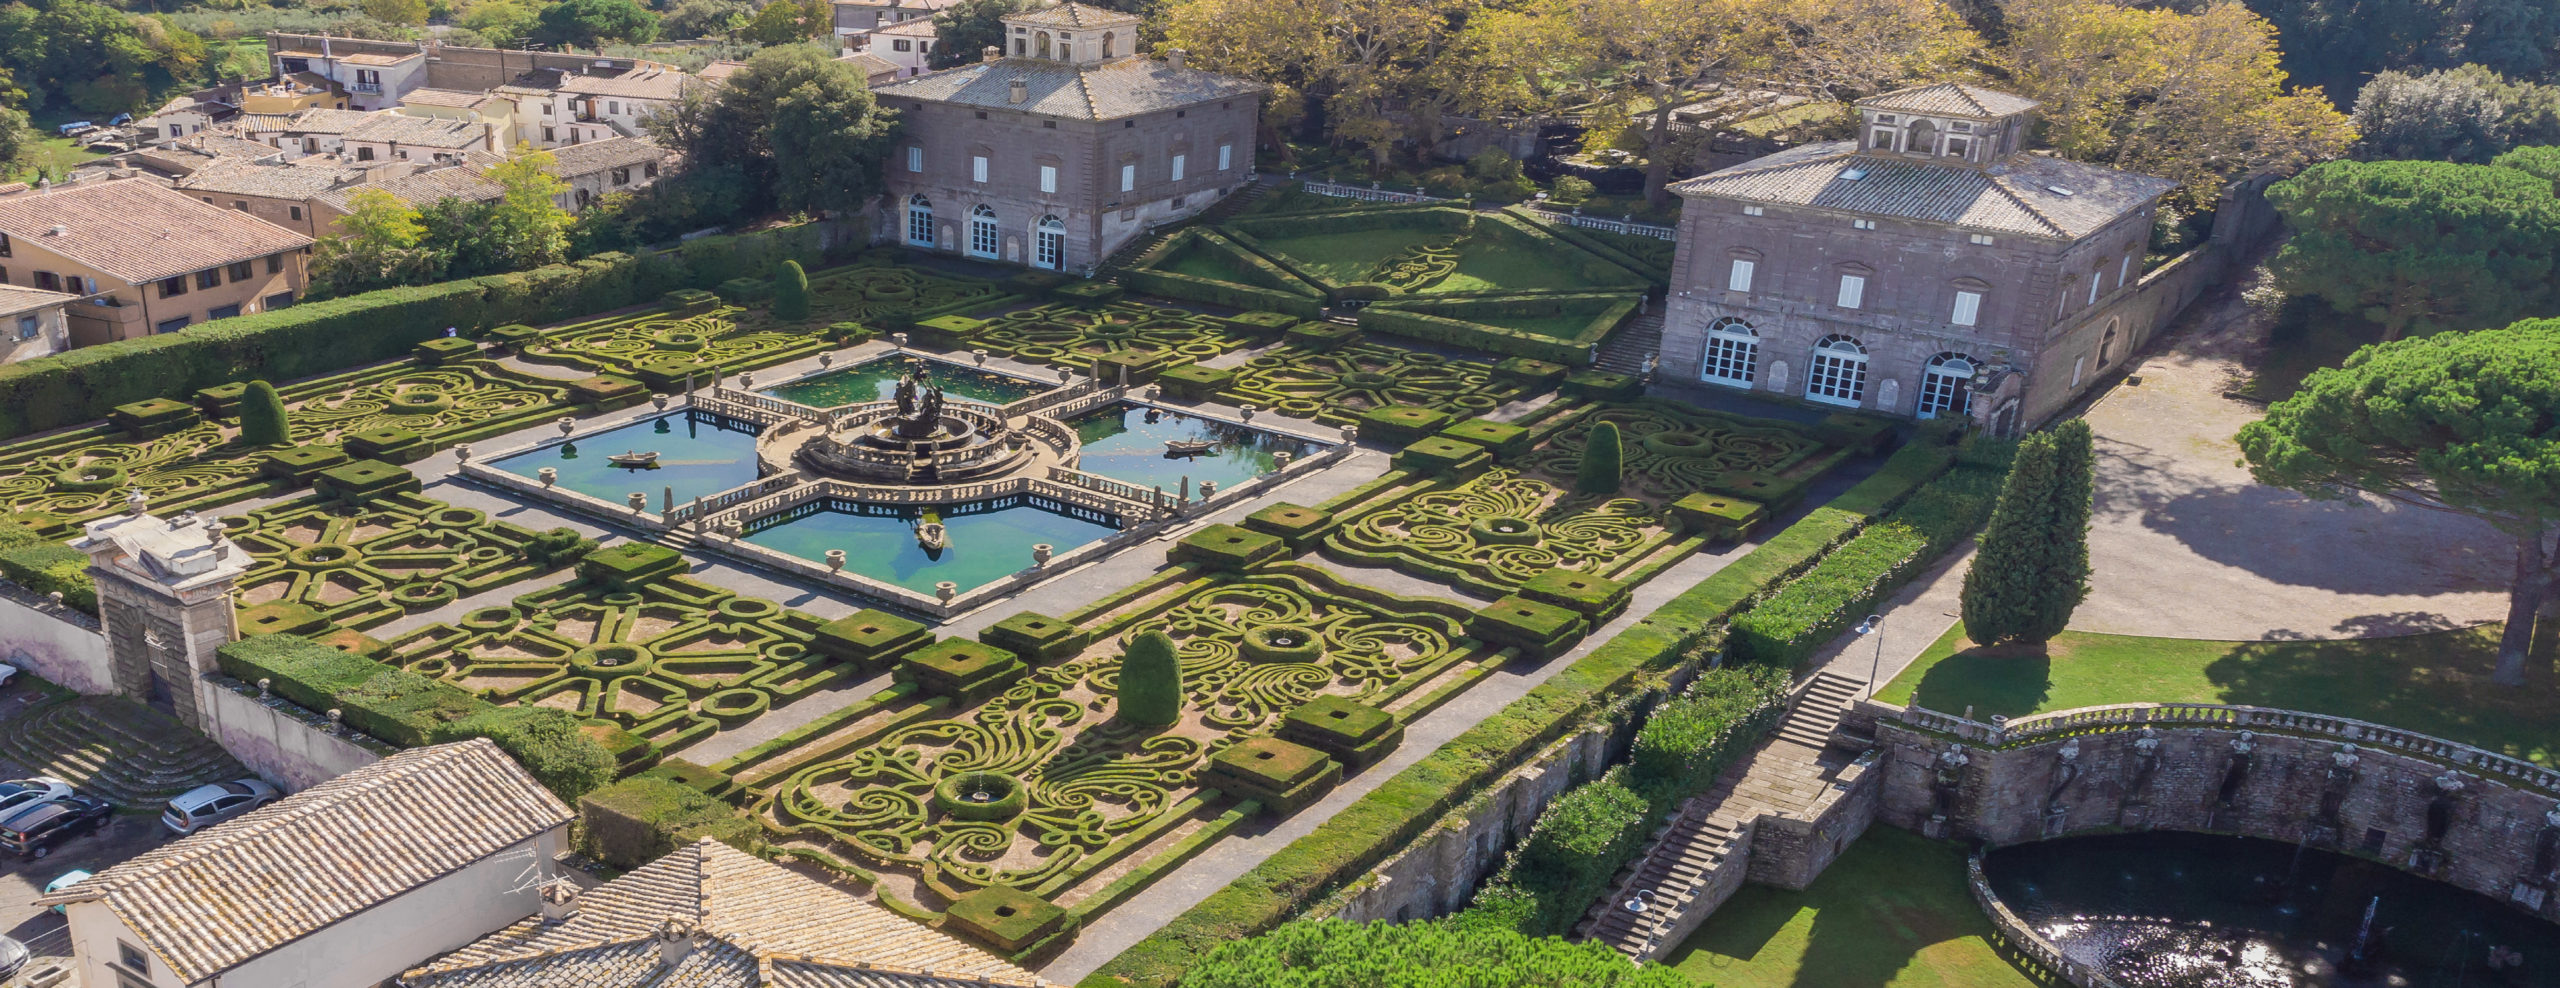 Villa Lante - veduta aerea del giardino formale (ph. M. Mascellini)